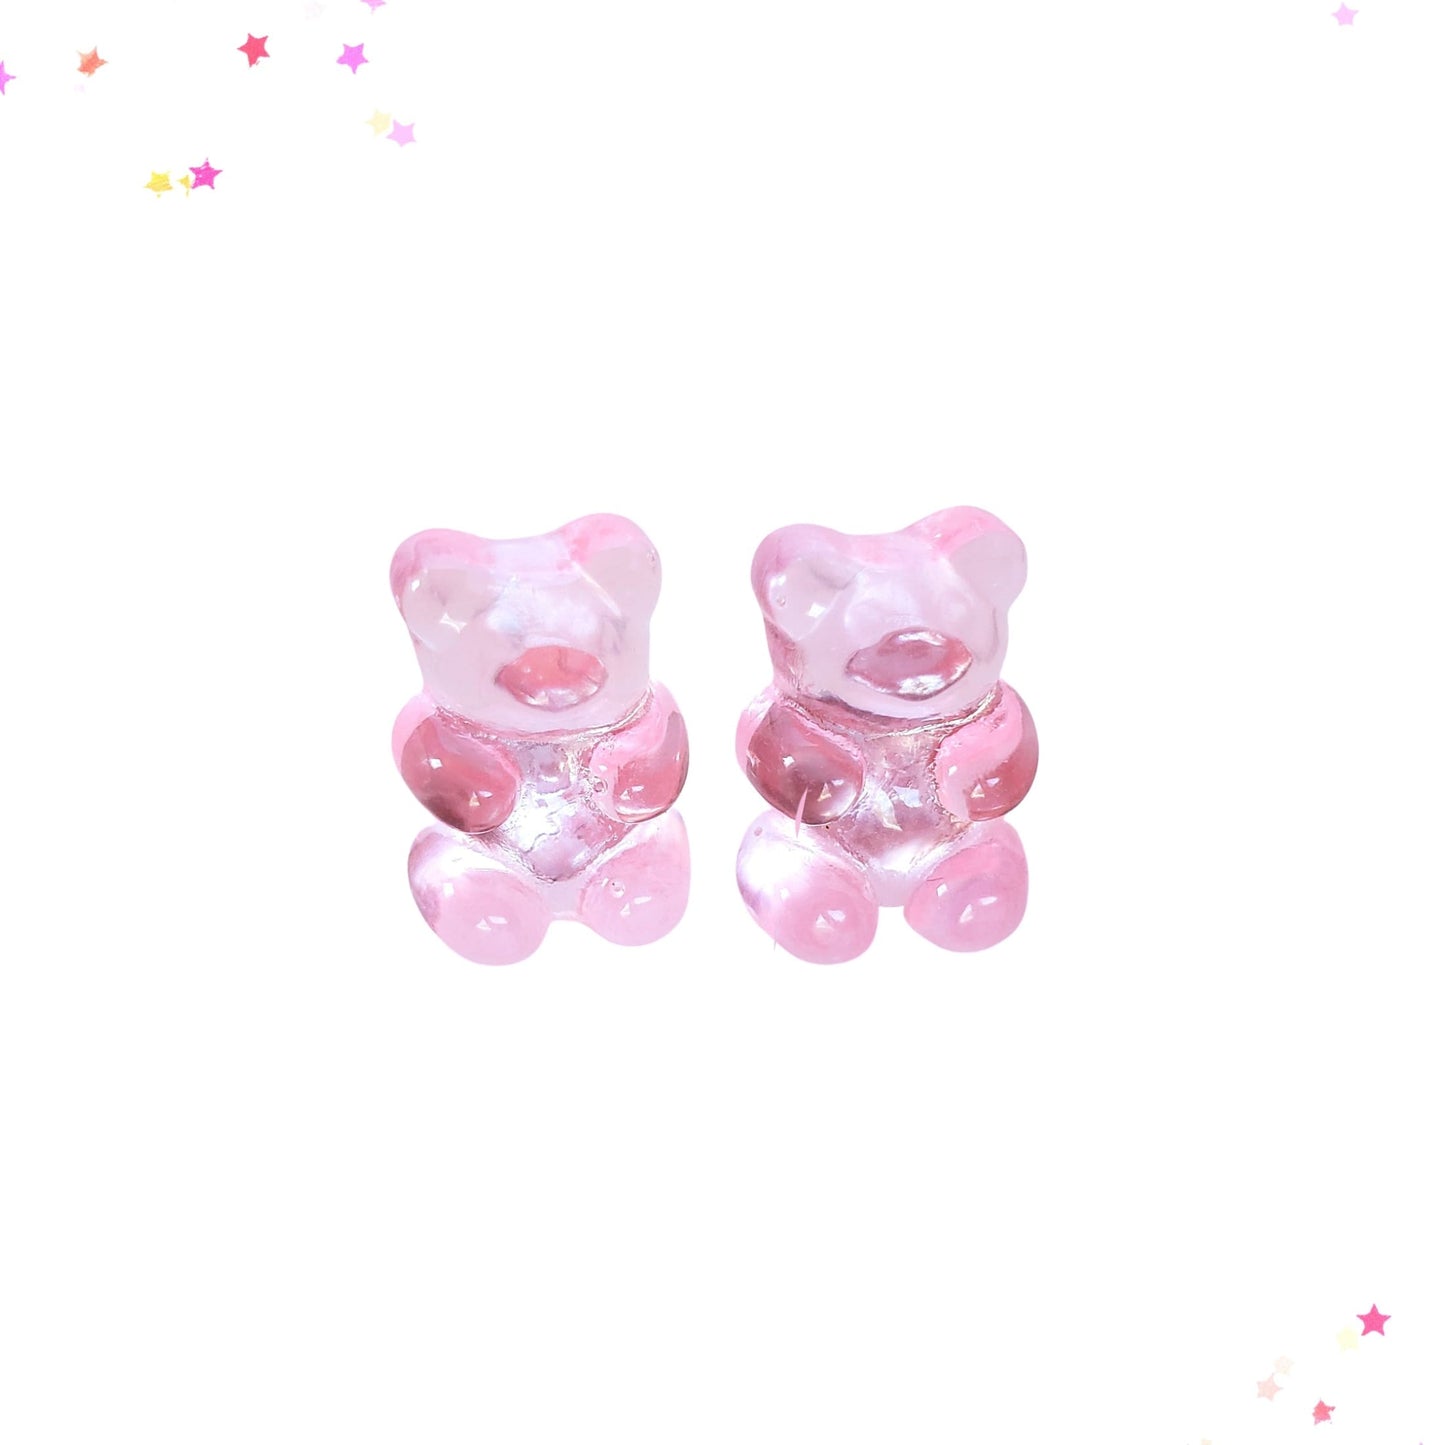 Gummy Bear Post Earrings in Pink Lemonade from Confetti Kitty, Only 3.99